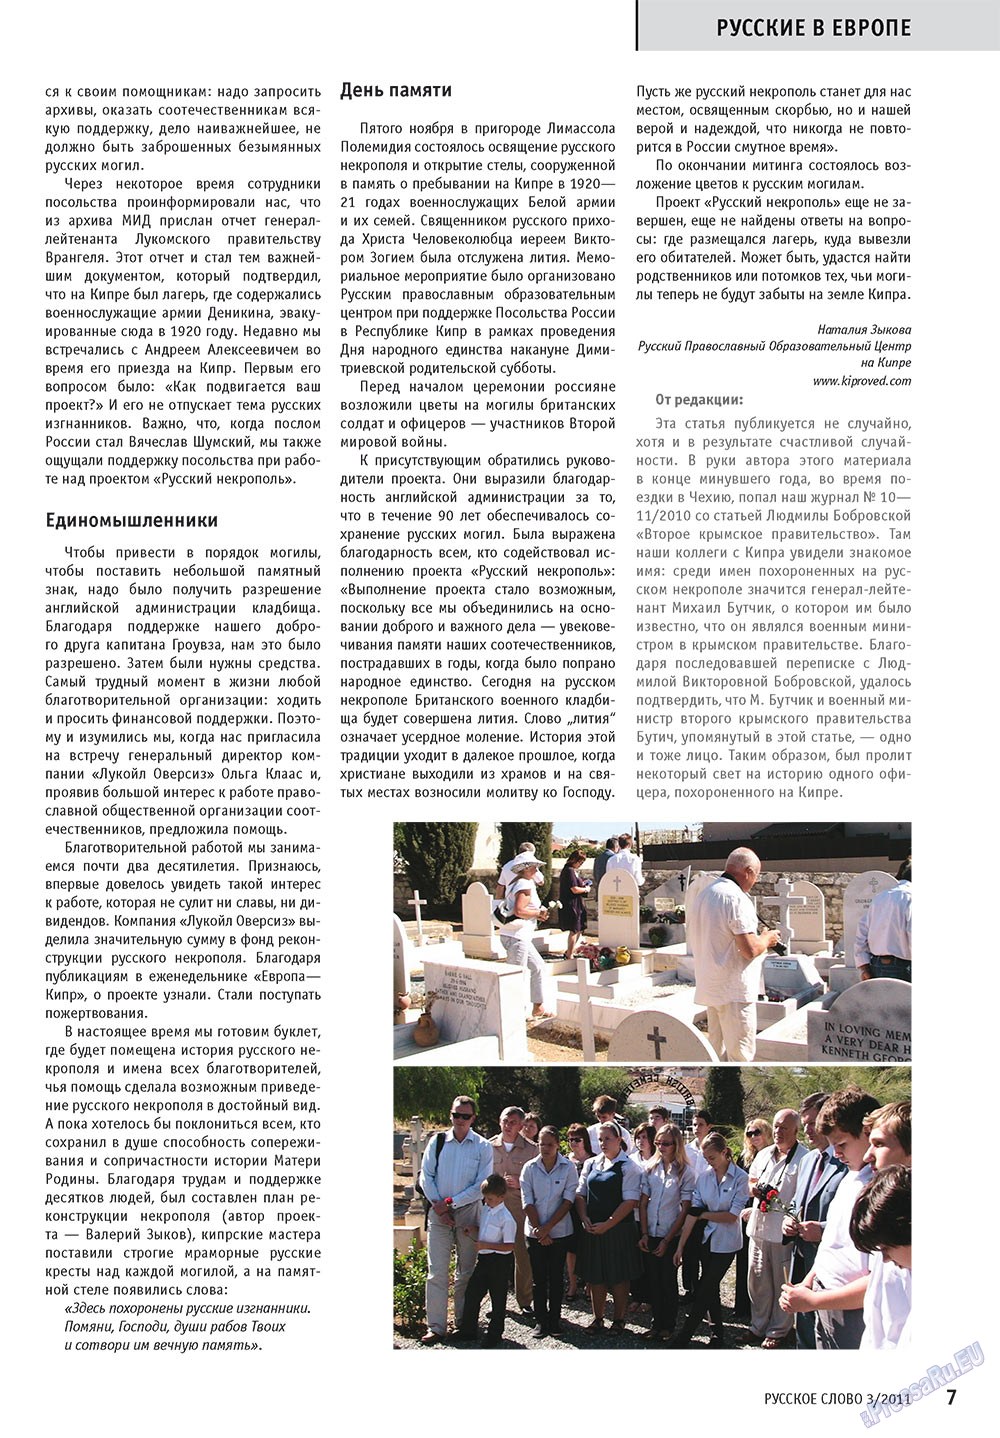 Русское слово, журнал. 2011 №3 стр.9